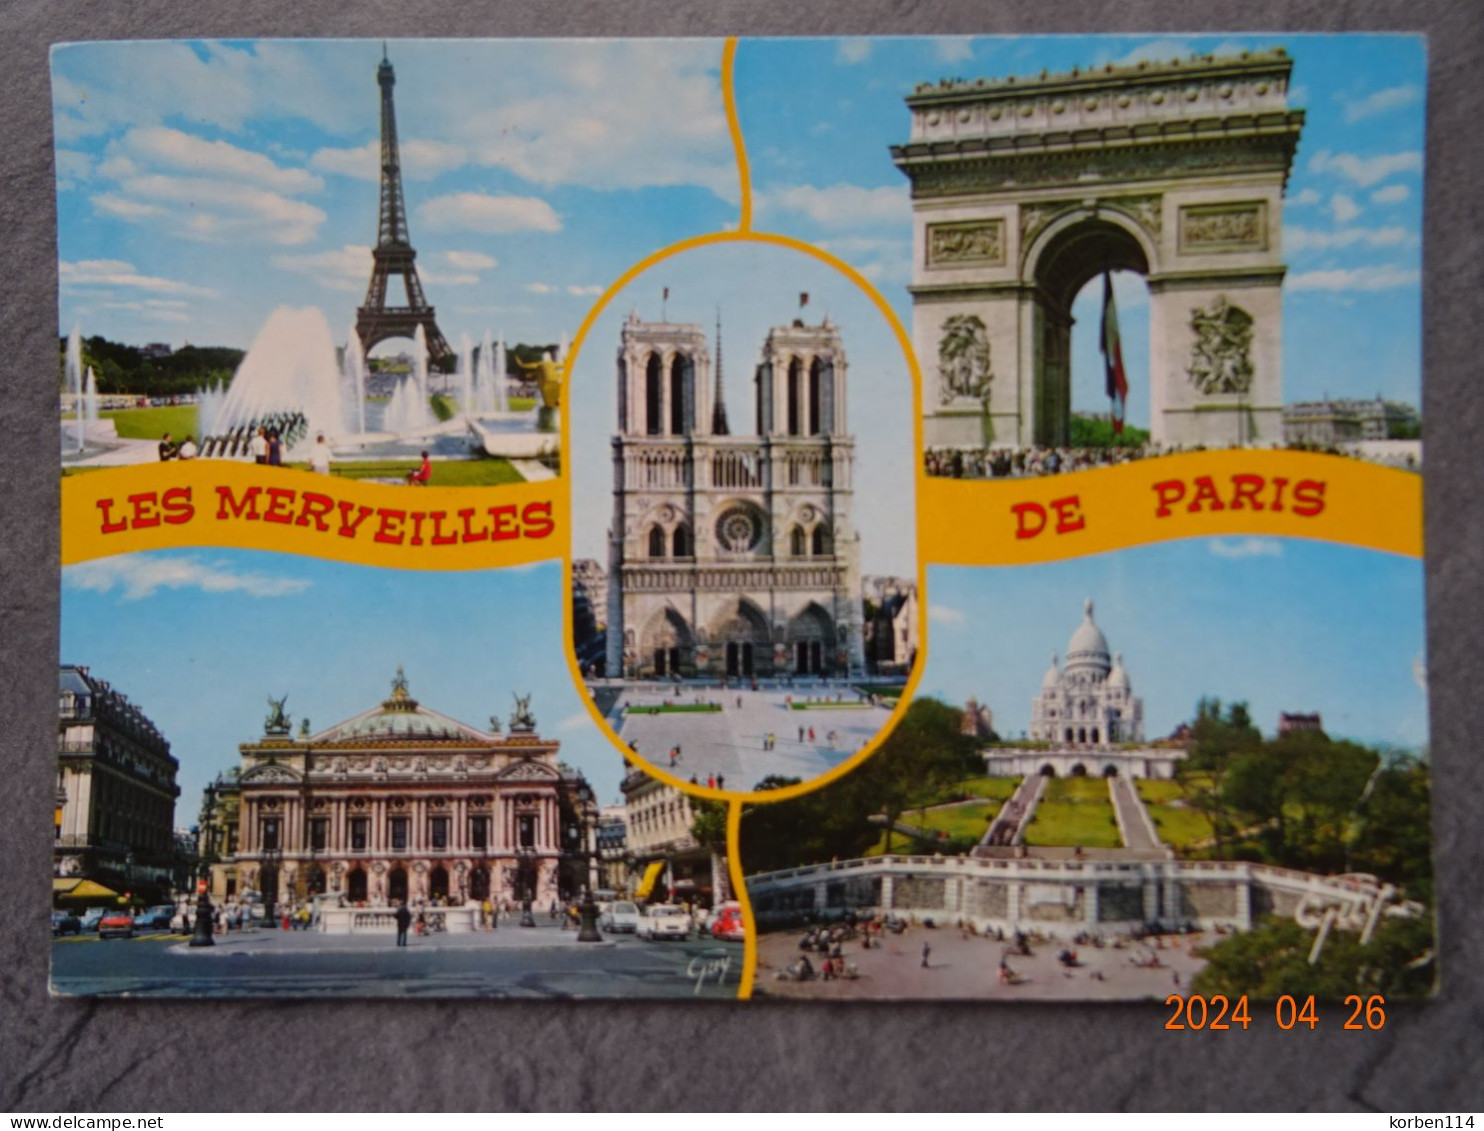 LES MERVEILLES DE PARIS - Other Monuments